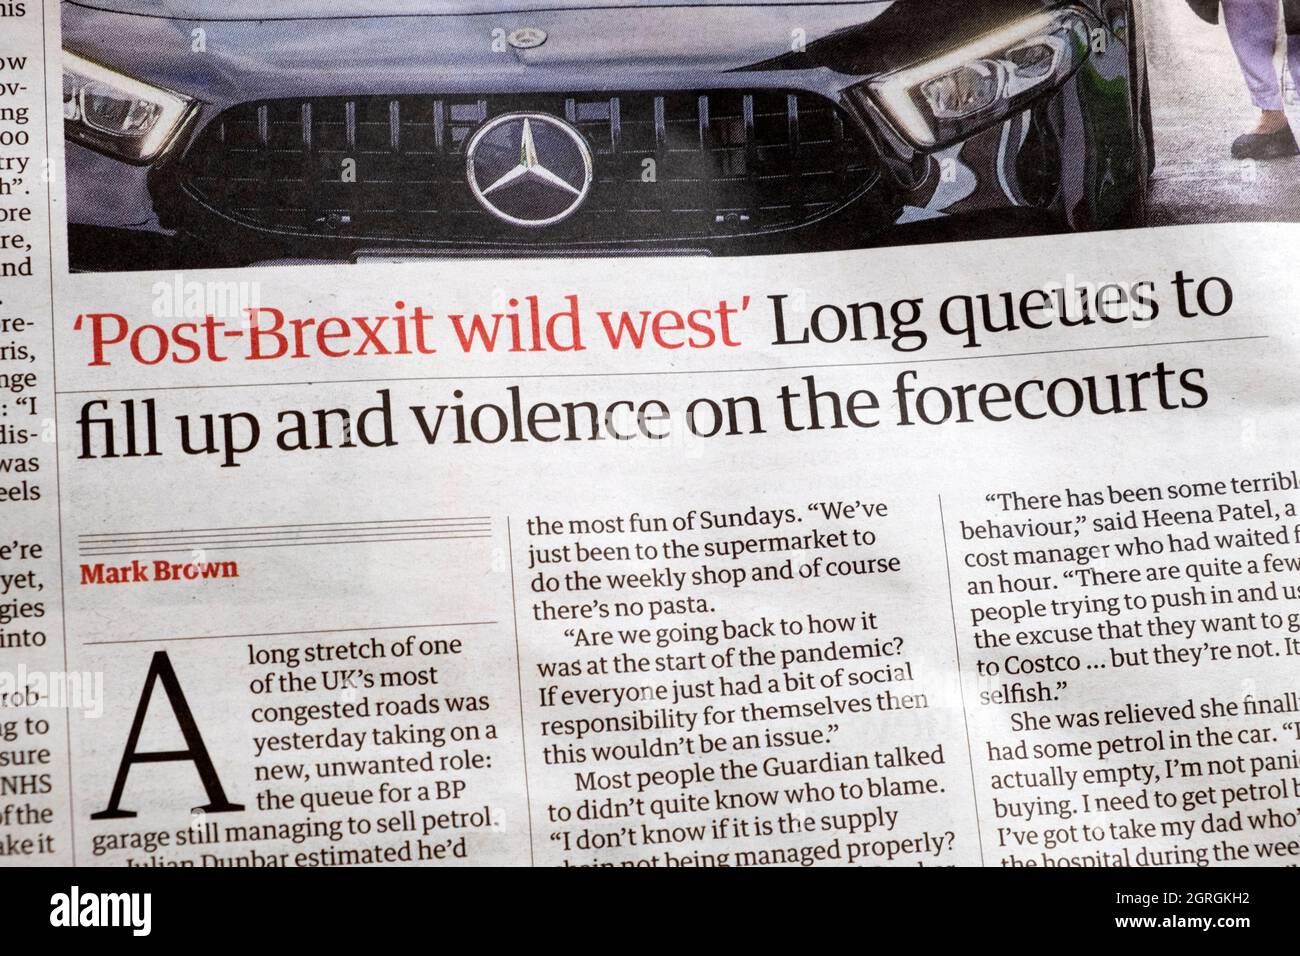 "Après le Brexit Wild West longues files d'attente pour se remplir et la violence sur les prévisionnistes" journal Guardian titre pénurie d'essence 27 septembre 2021 Londres Royaume-Uni Banque D'Images